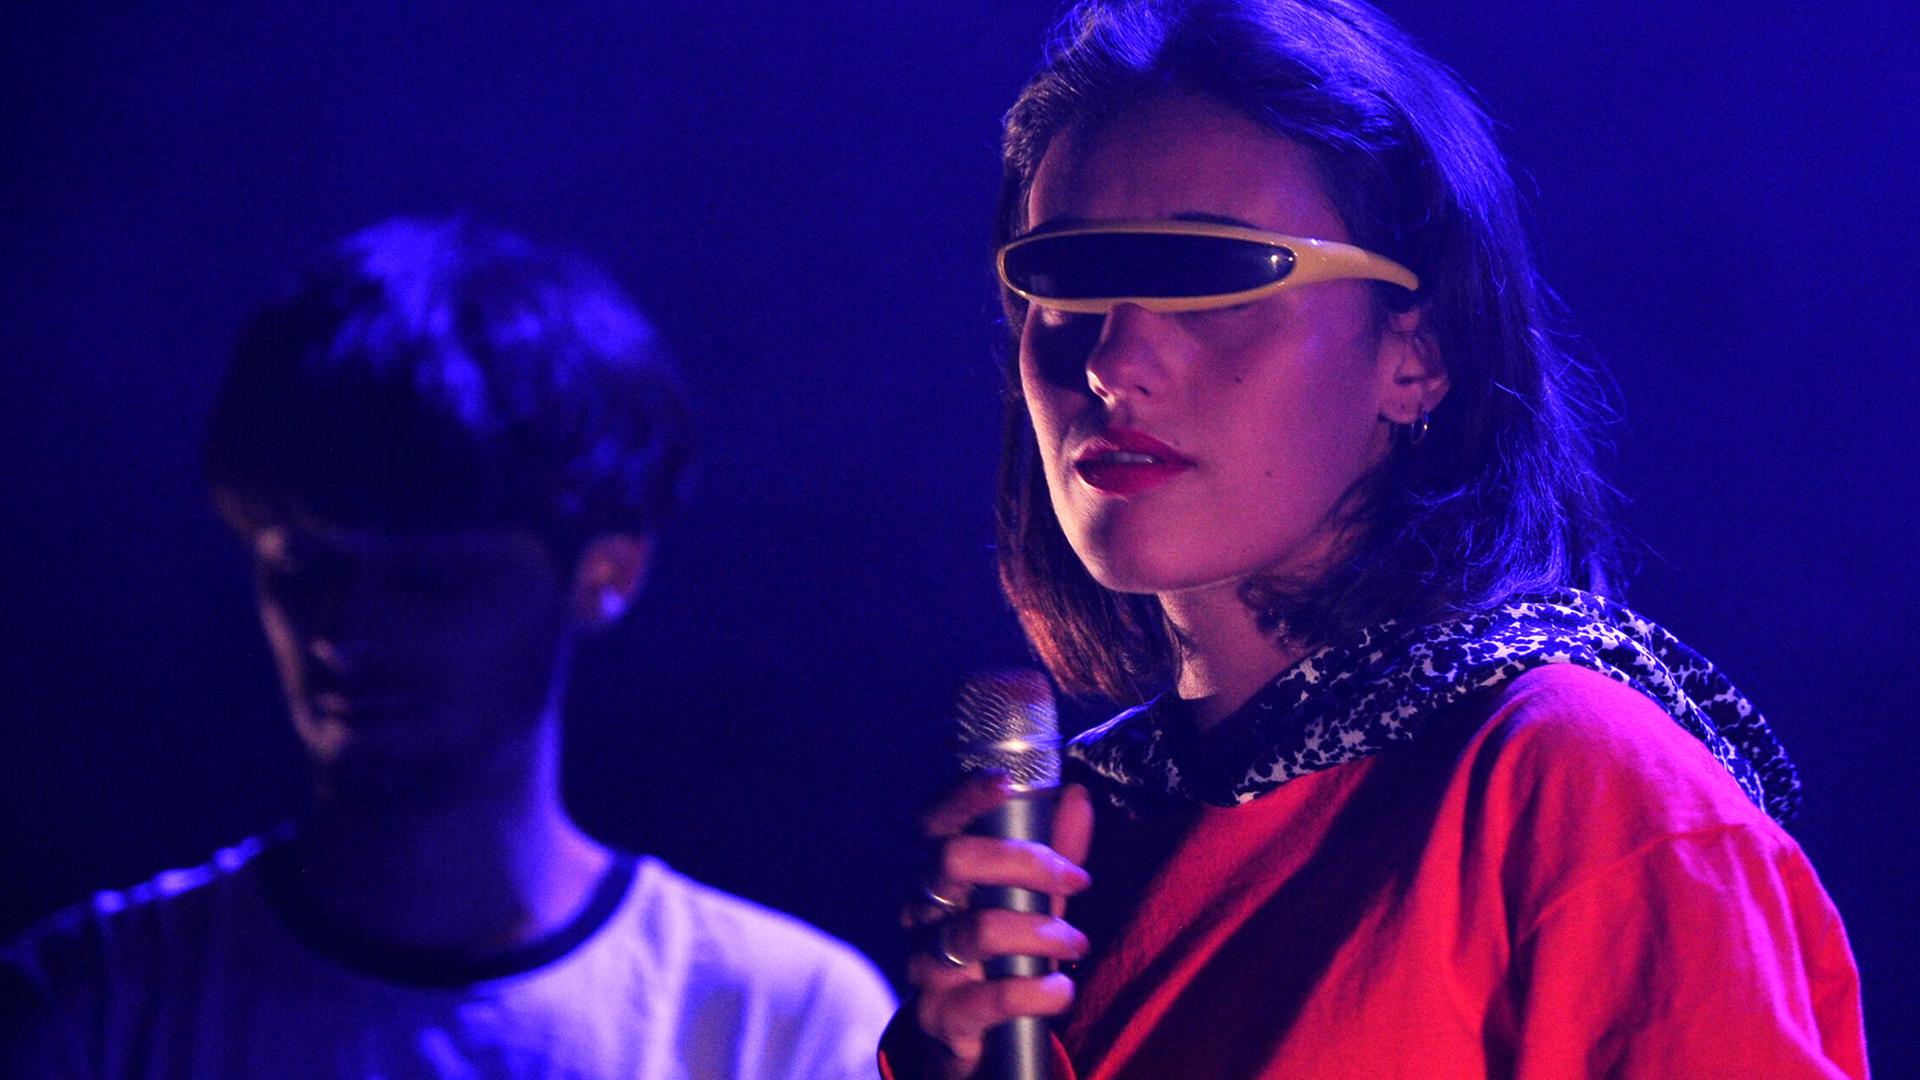 Sängerin und Mitglied der französischen Rockband Agar Agar Clara Cappagli steht im Juli 2017 mit einer futuristischen Sonnenbrille auf einer Bühne.